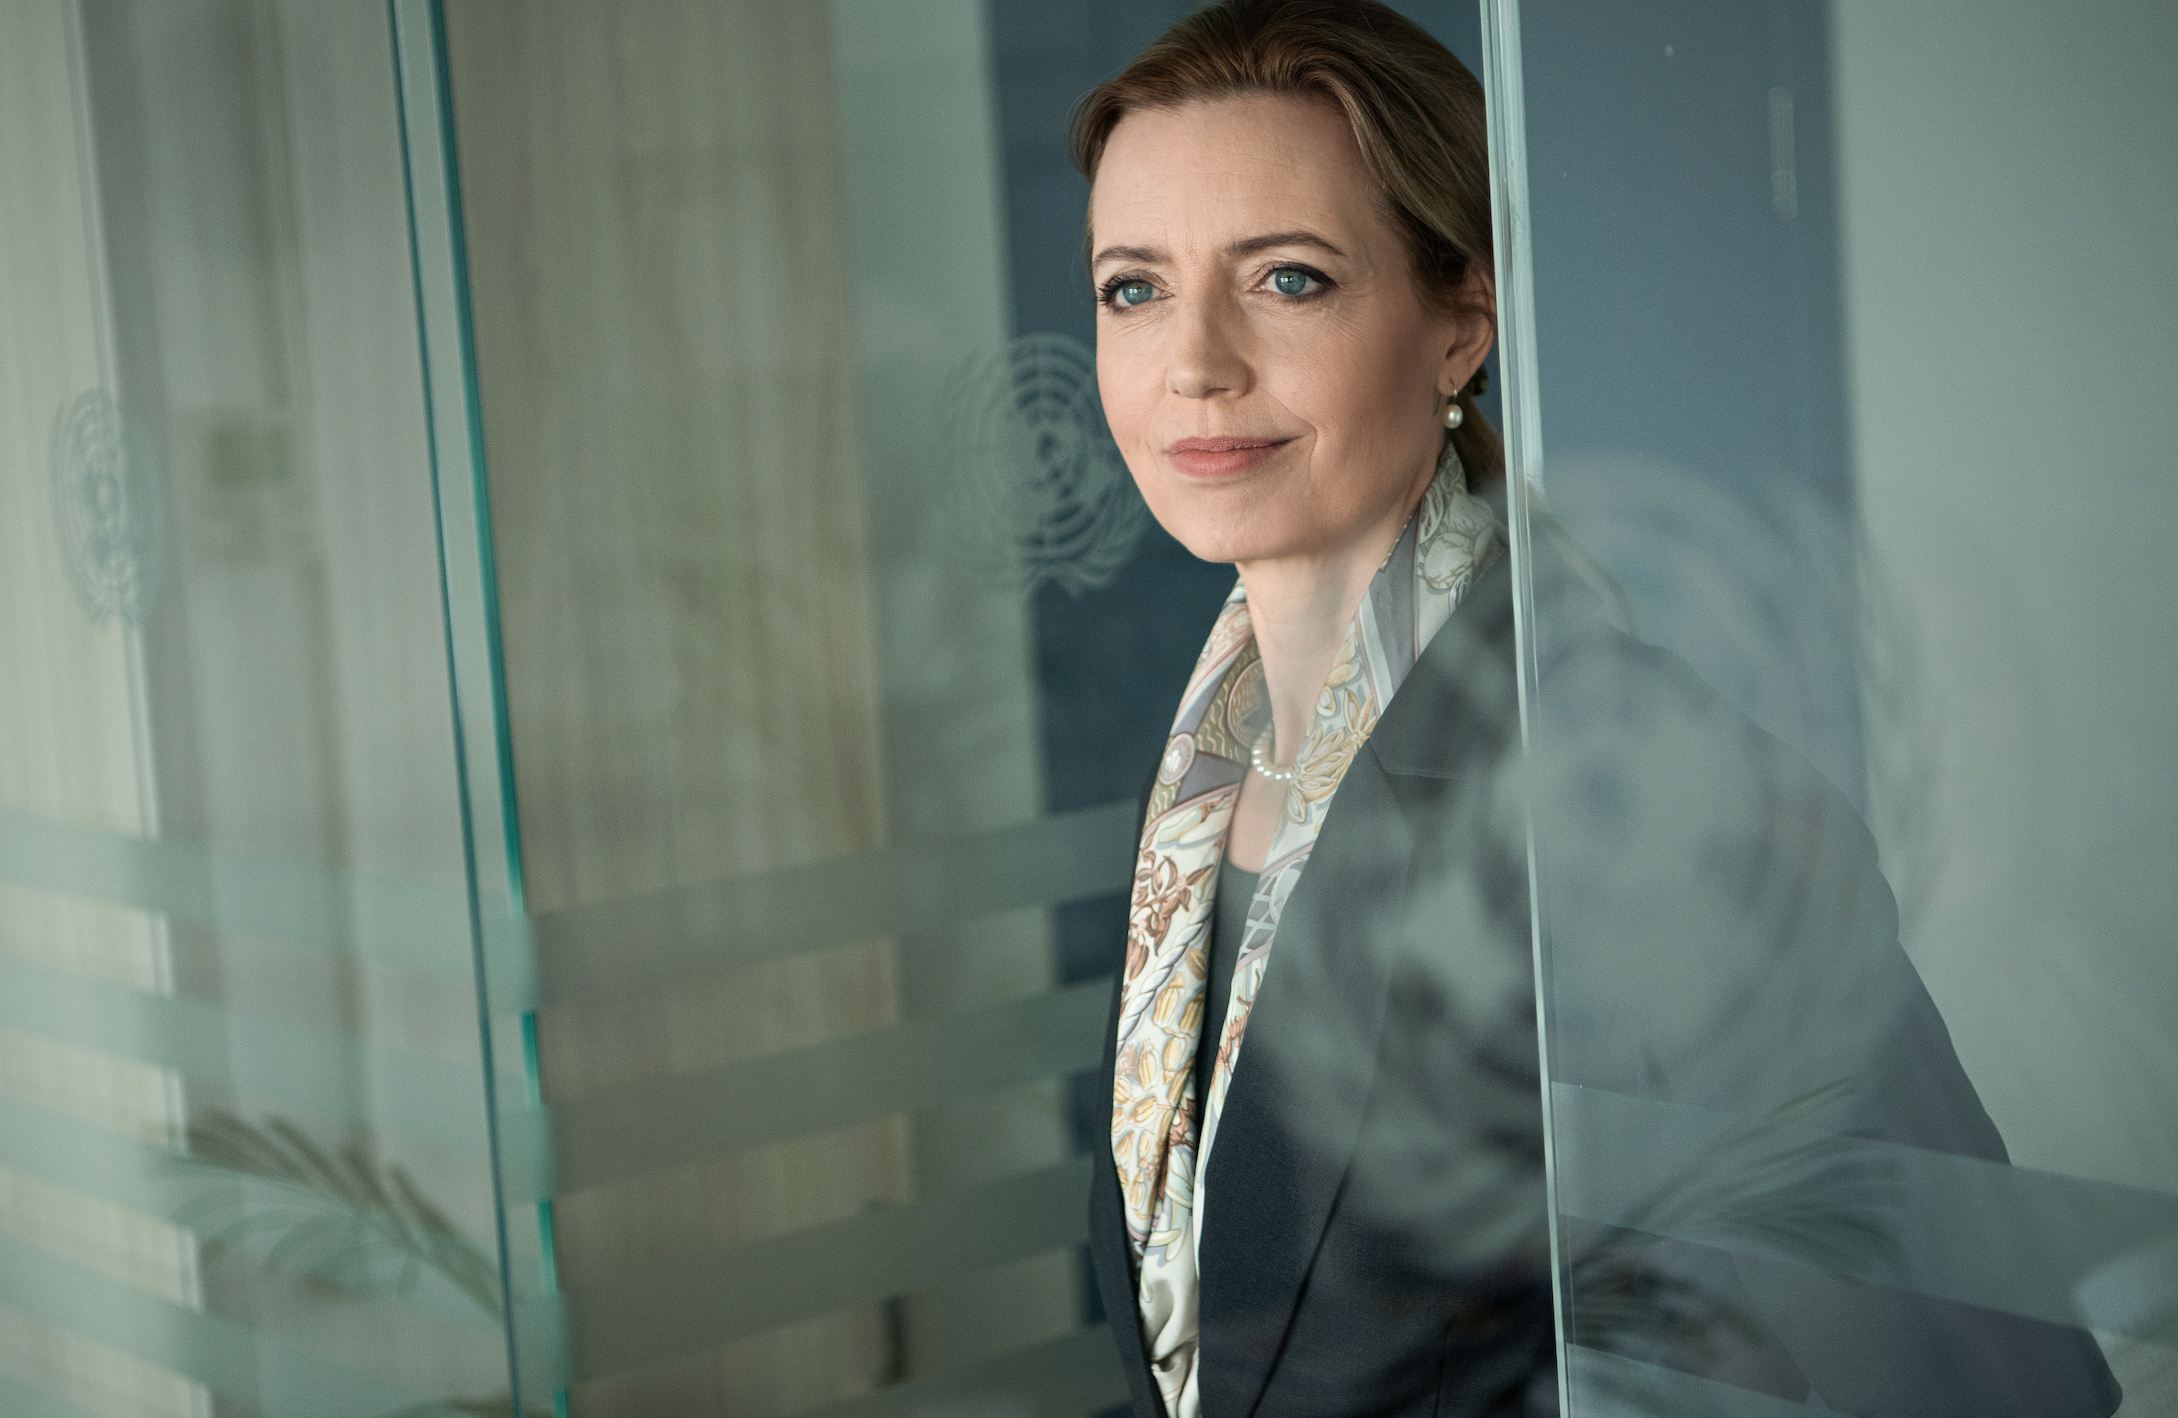 Микаэла Фриберг-Стори начала свою миссию в Казахстане в ноябре 2020 года, имея в  этой должности более 20 лет опыта работы  с безопасностью и развитием. Фото любезно предоставлено: Представительство ООН в Казахстане.